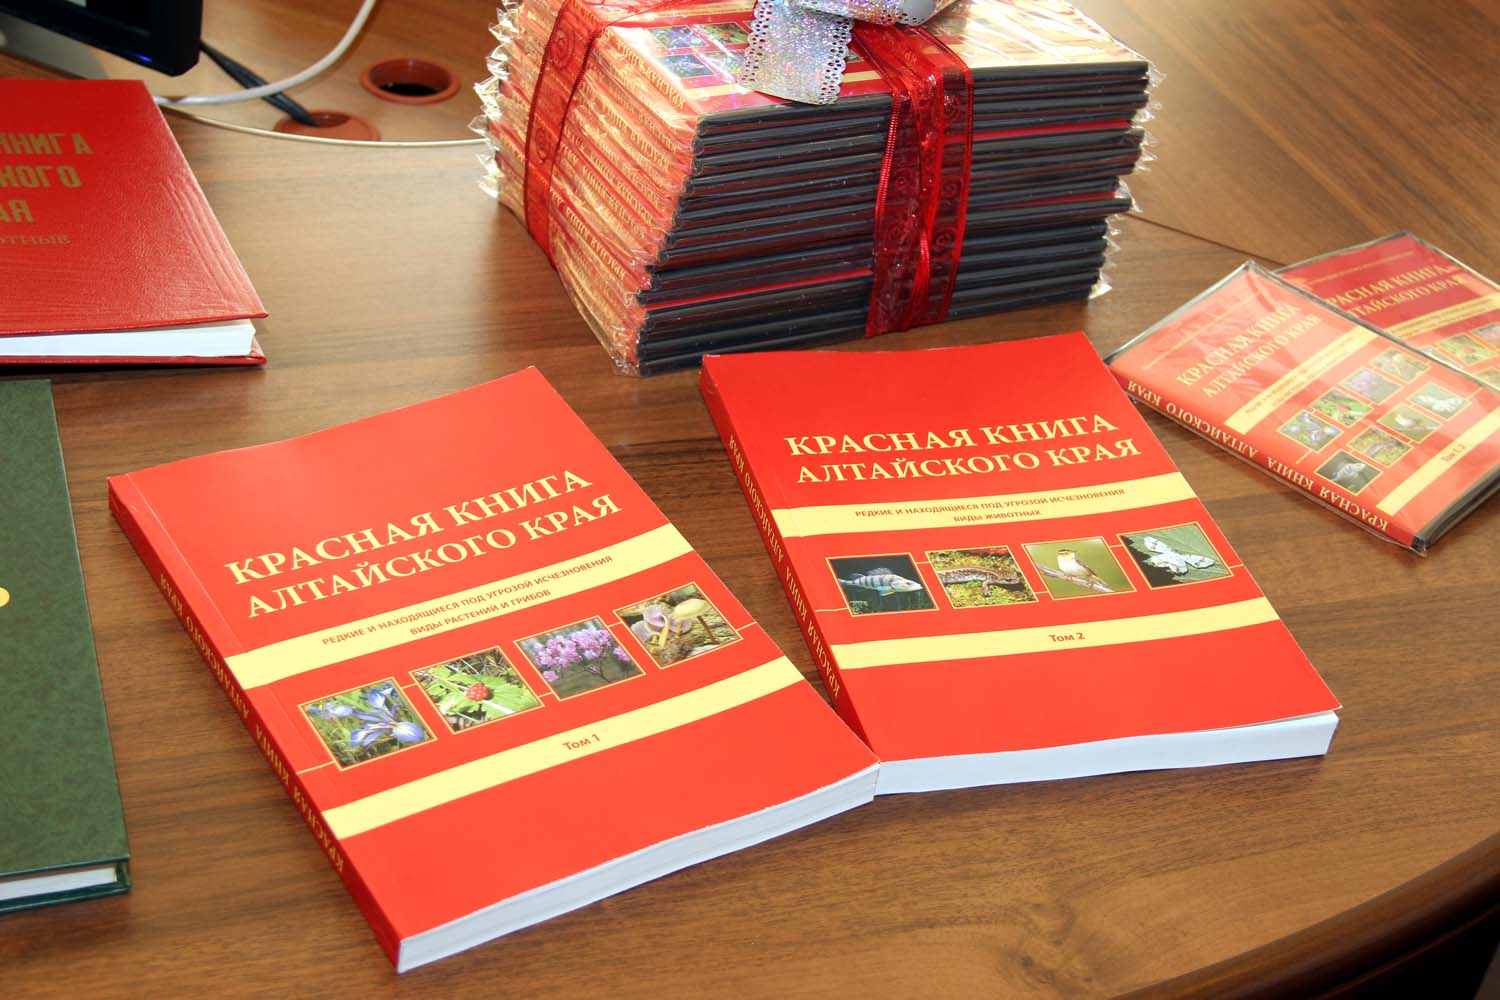 Издательство красной книги